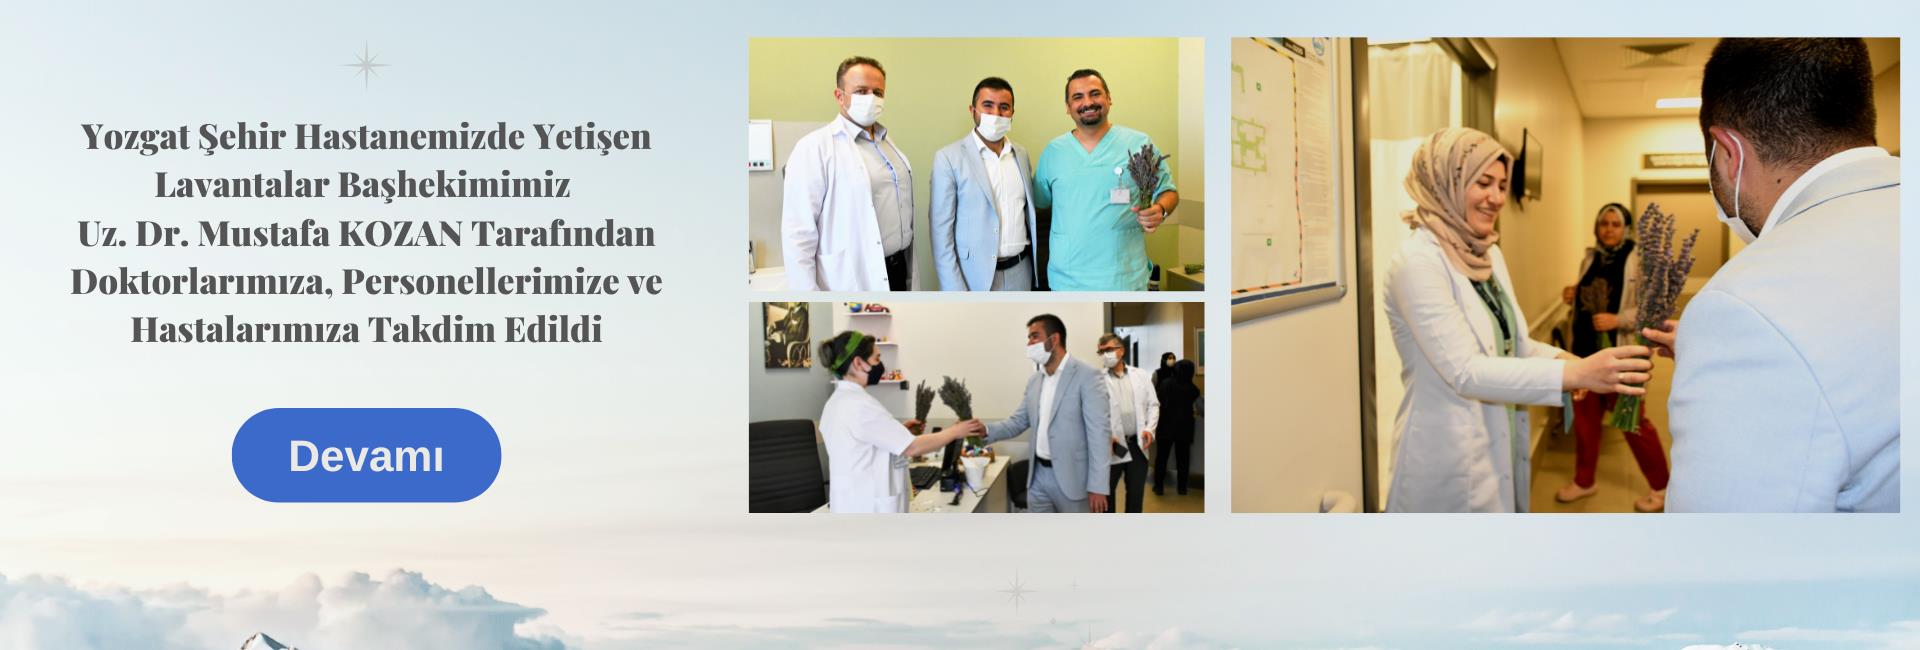 Yozgat Şehir Hastanemizde Yetişen Lavantalar Başhekimimiz  Uz. Dr. Mustafa KOZAN Tarafından Doktorlarımıza, Personellerimize ve Hastalarımıza Takdim Edildi